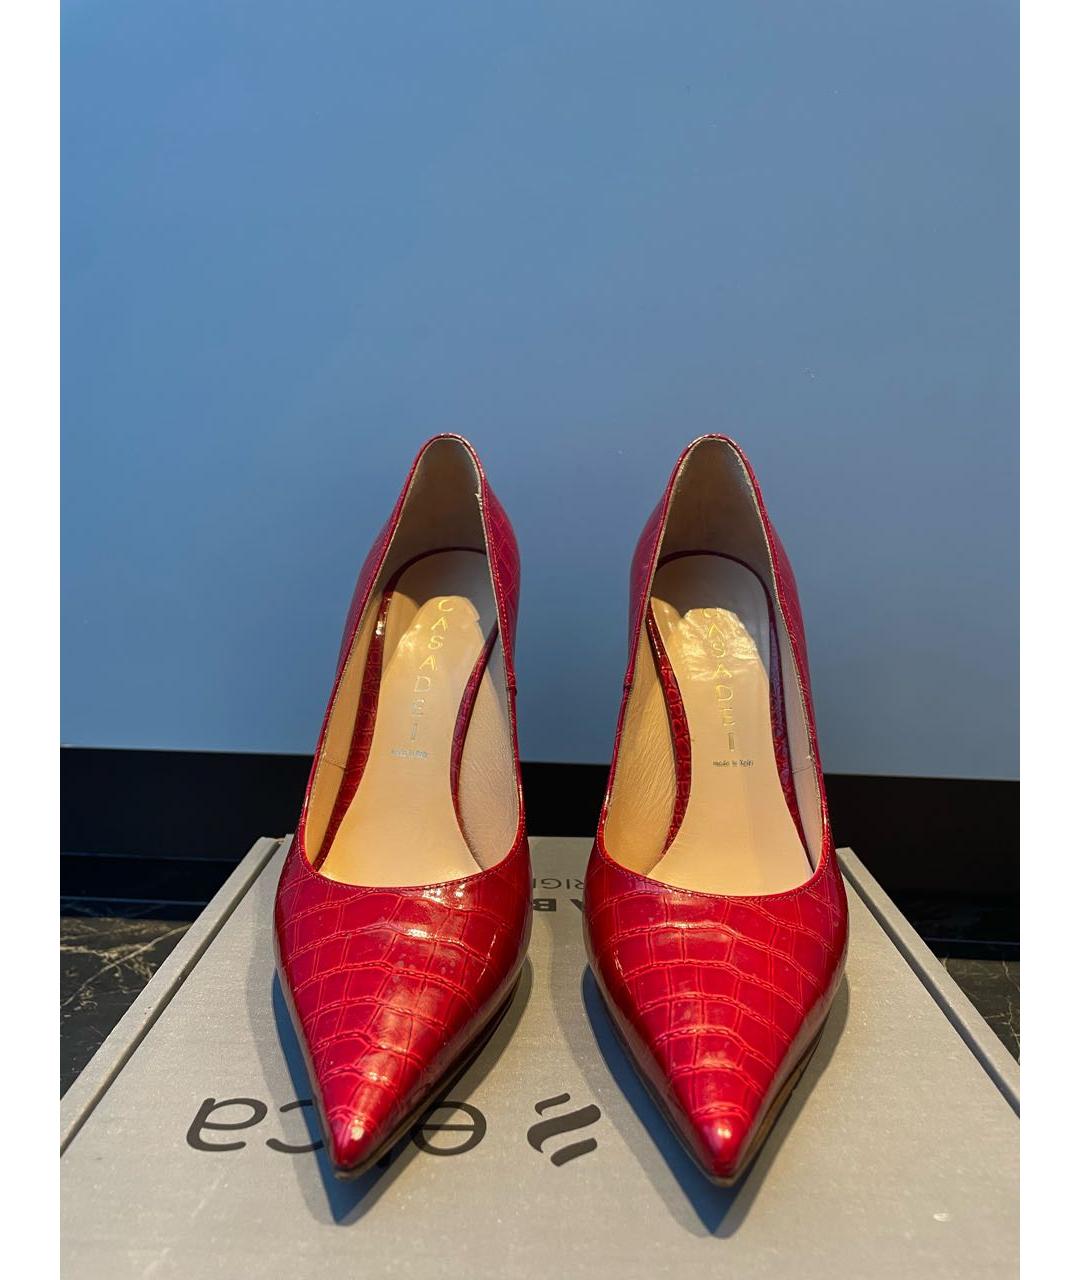 CASADEI Красные туфли из лакированной кожи, фото 6